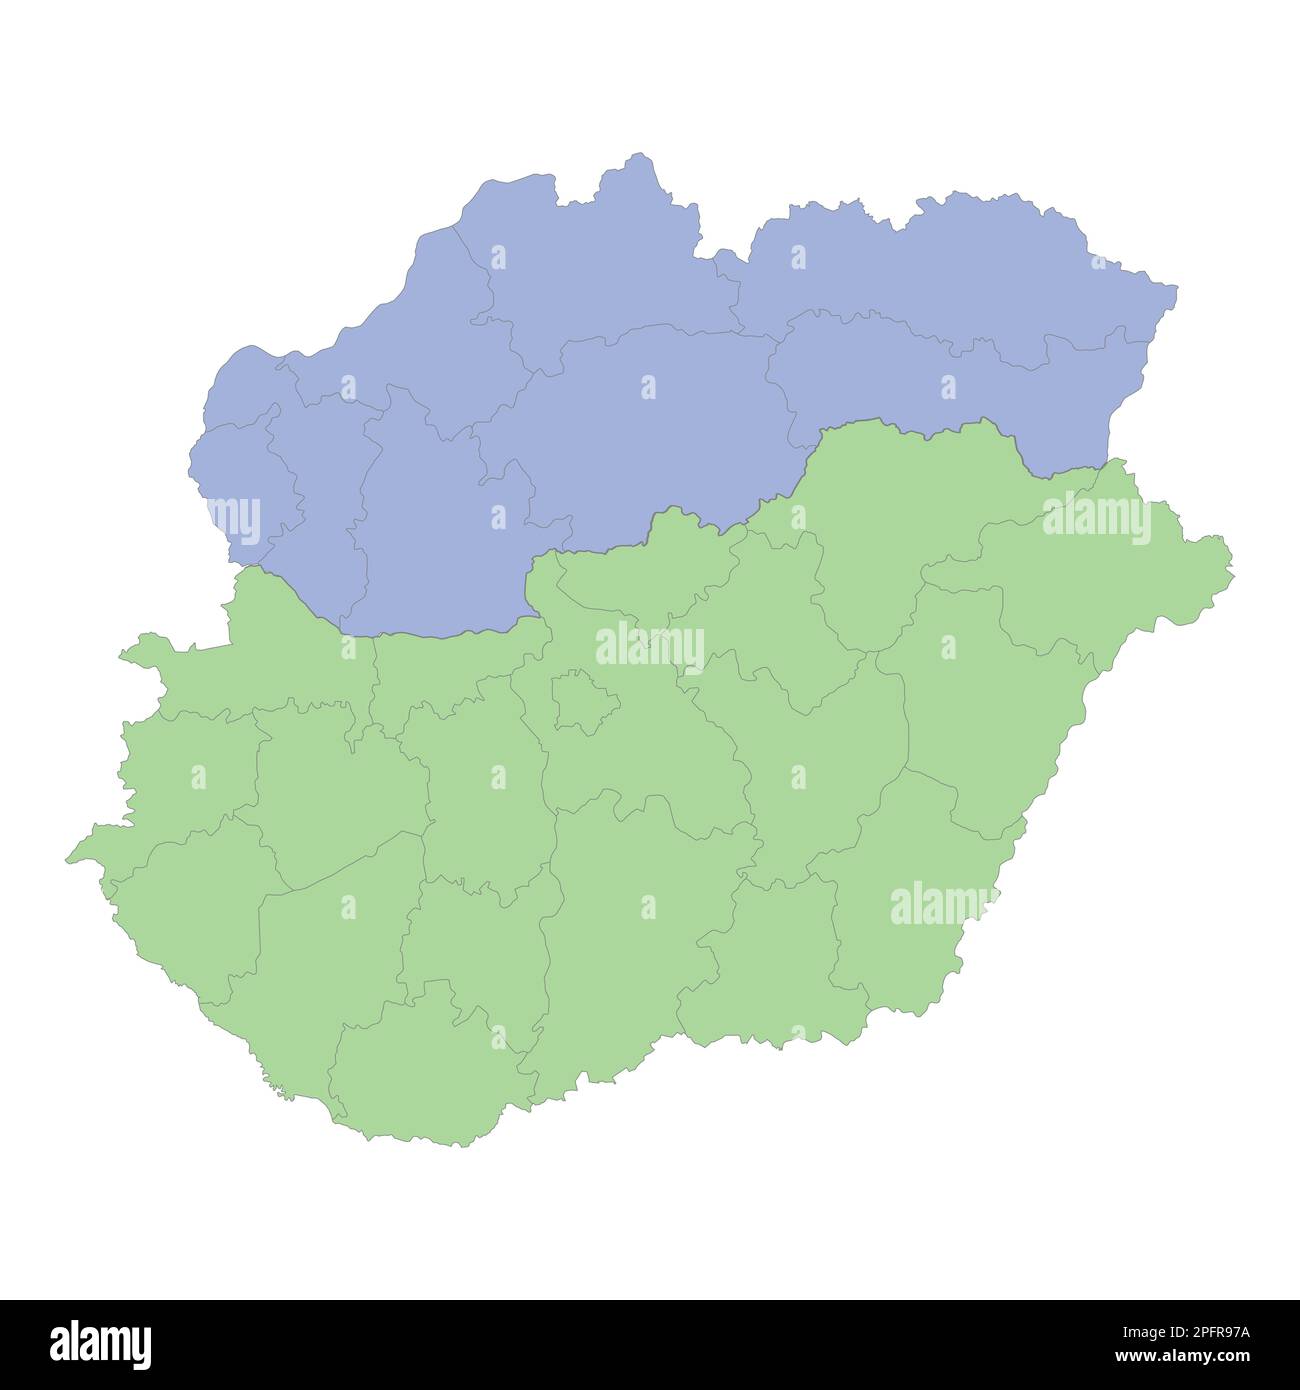 Mappa politica di alta qualità dell'Ungheria e della Slovacchia con i confini delle regioni o delle province. Illustrazione vettoriale Illustrazione Vettoriale